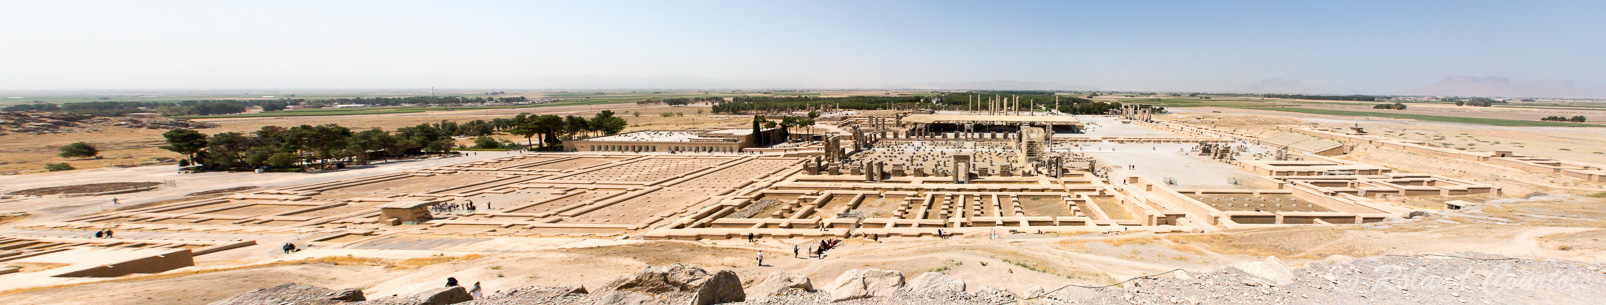 Persepolis : vue générale du site depuis la colline.